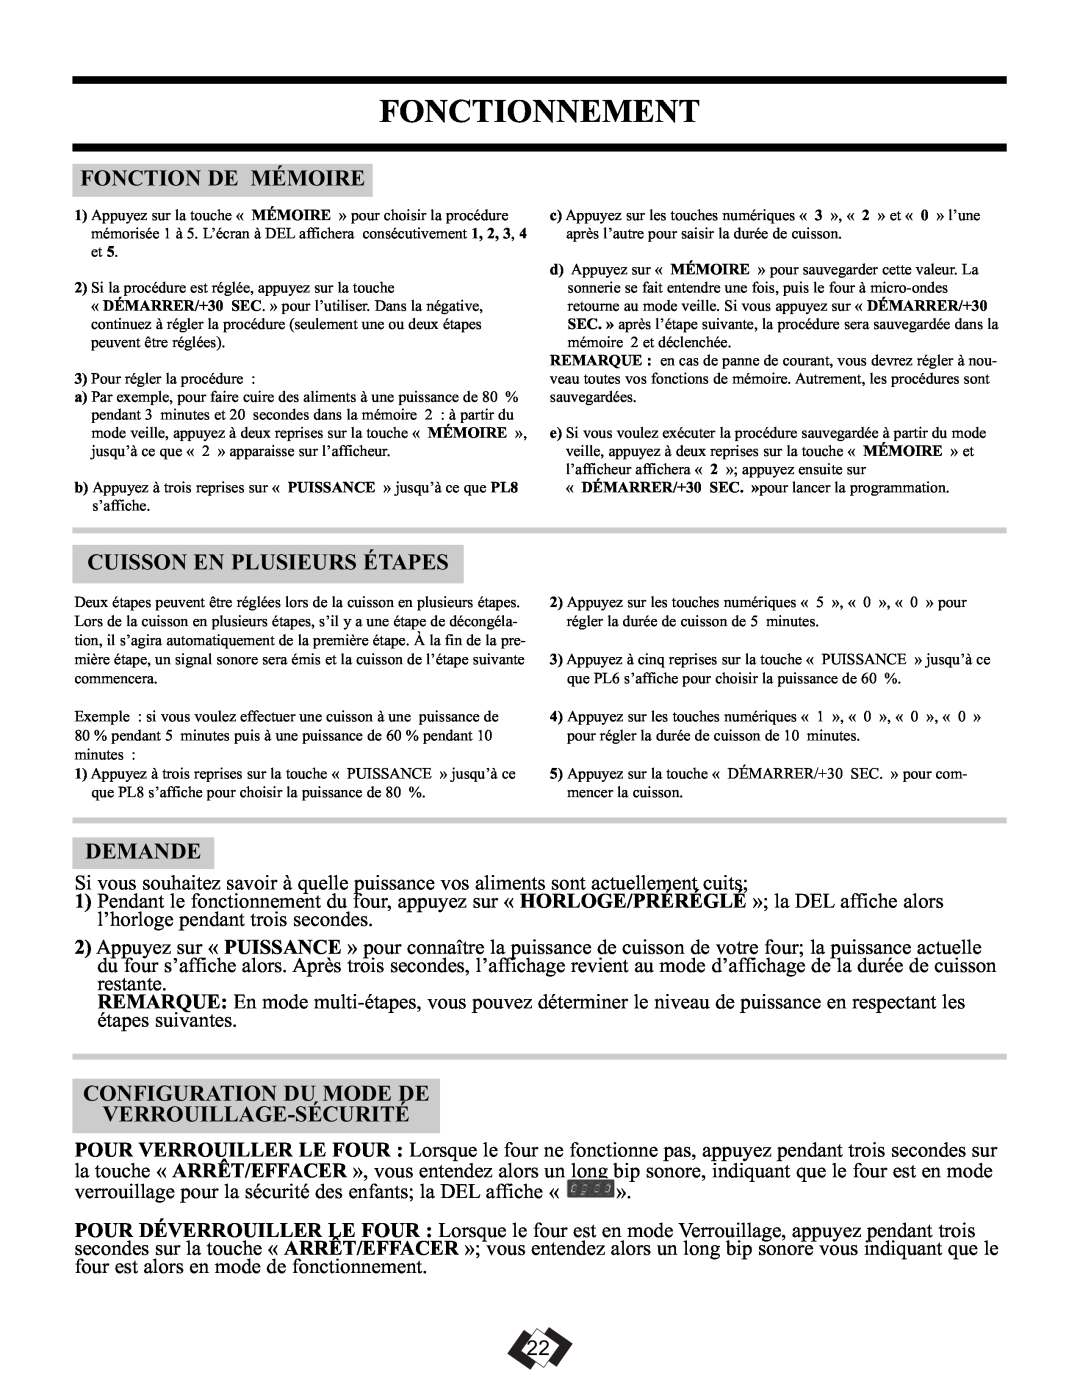 Danby DMW099BLSDD operating instructions Fonctionnement, Fonction De Mémoire, Cuisson En Plusieurs Étapes, Demande 